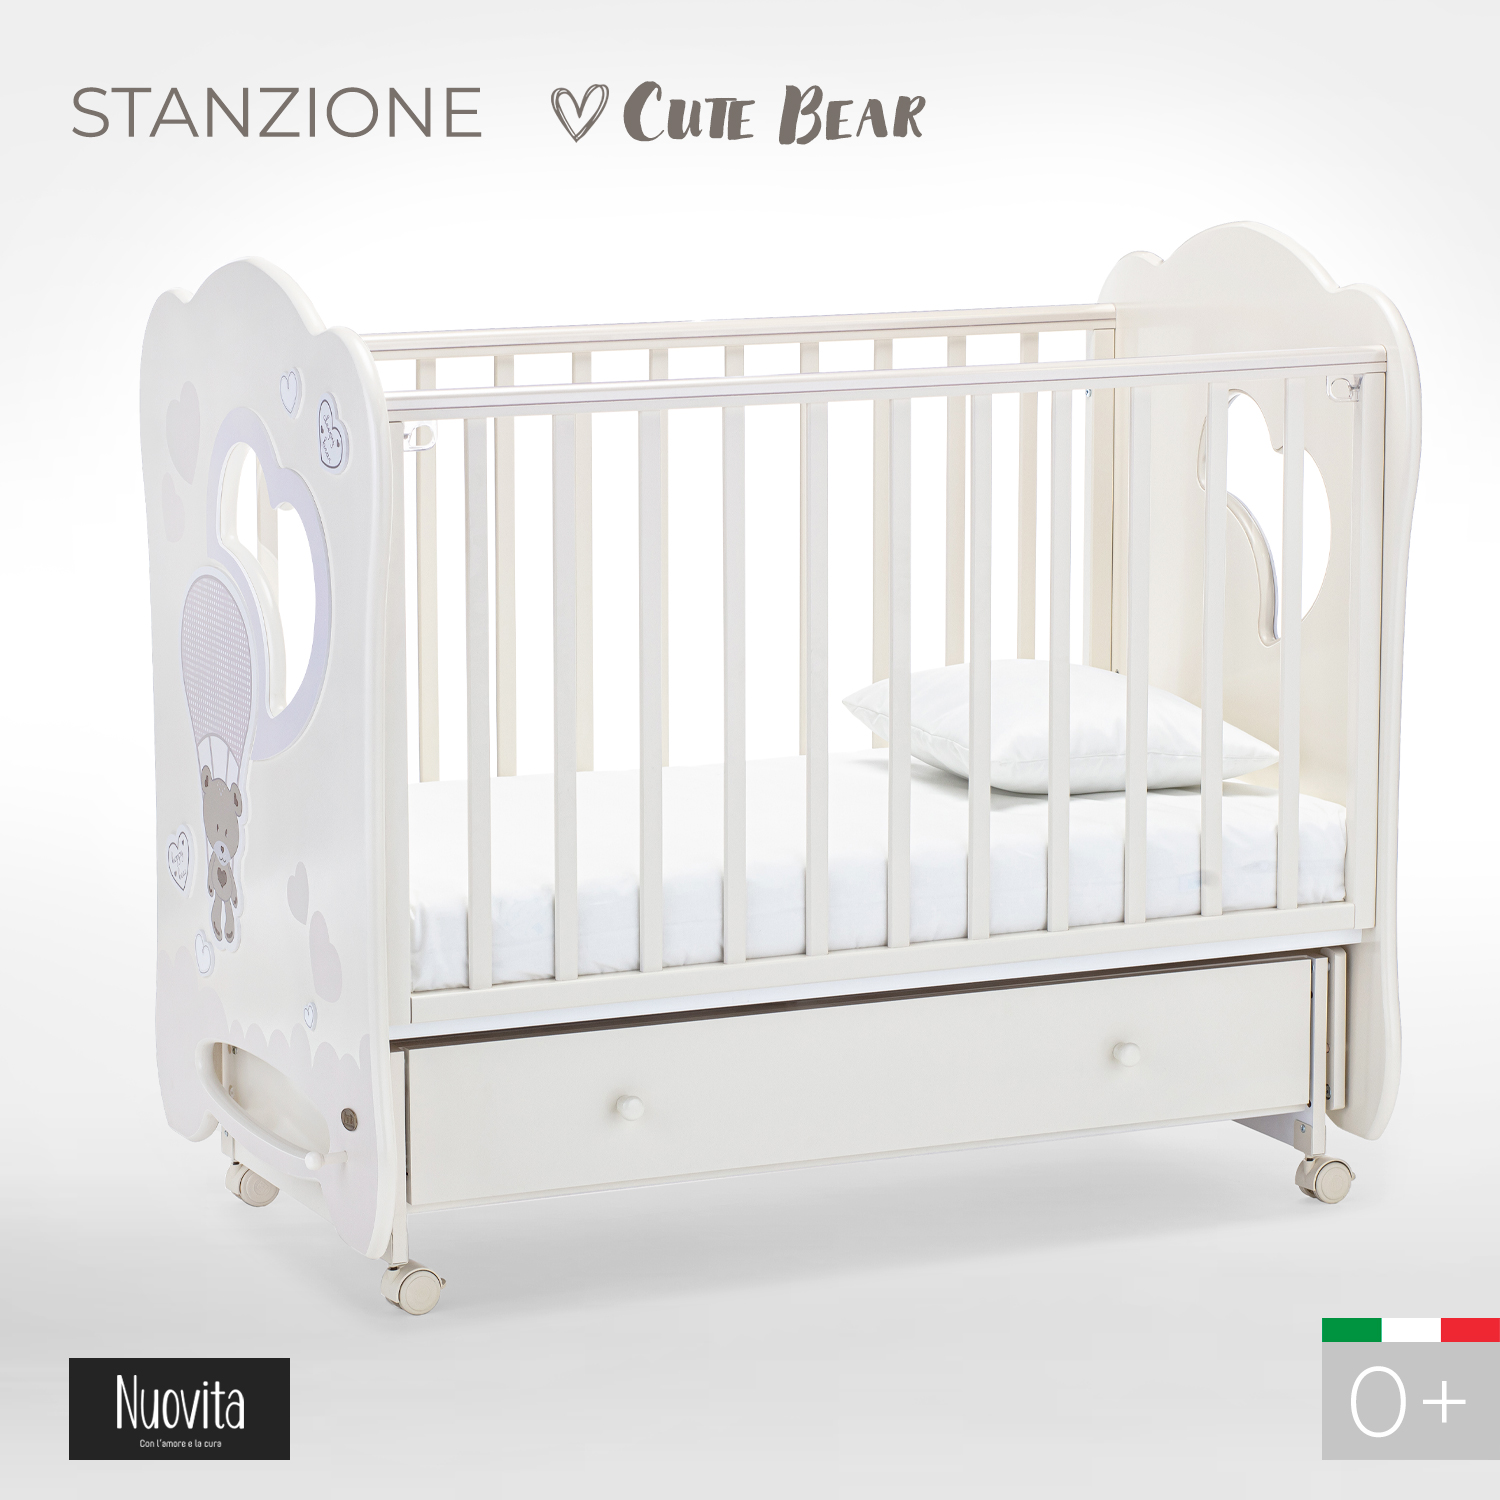 Детская кроватка Nuovita Stanzione прямоугольная, поперечный маятник (ваниль) - фото 2